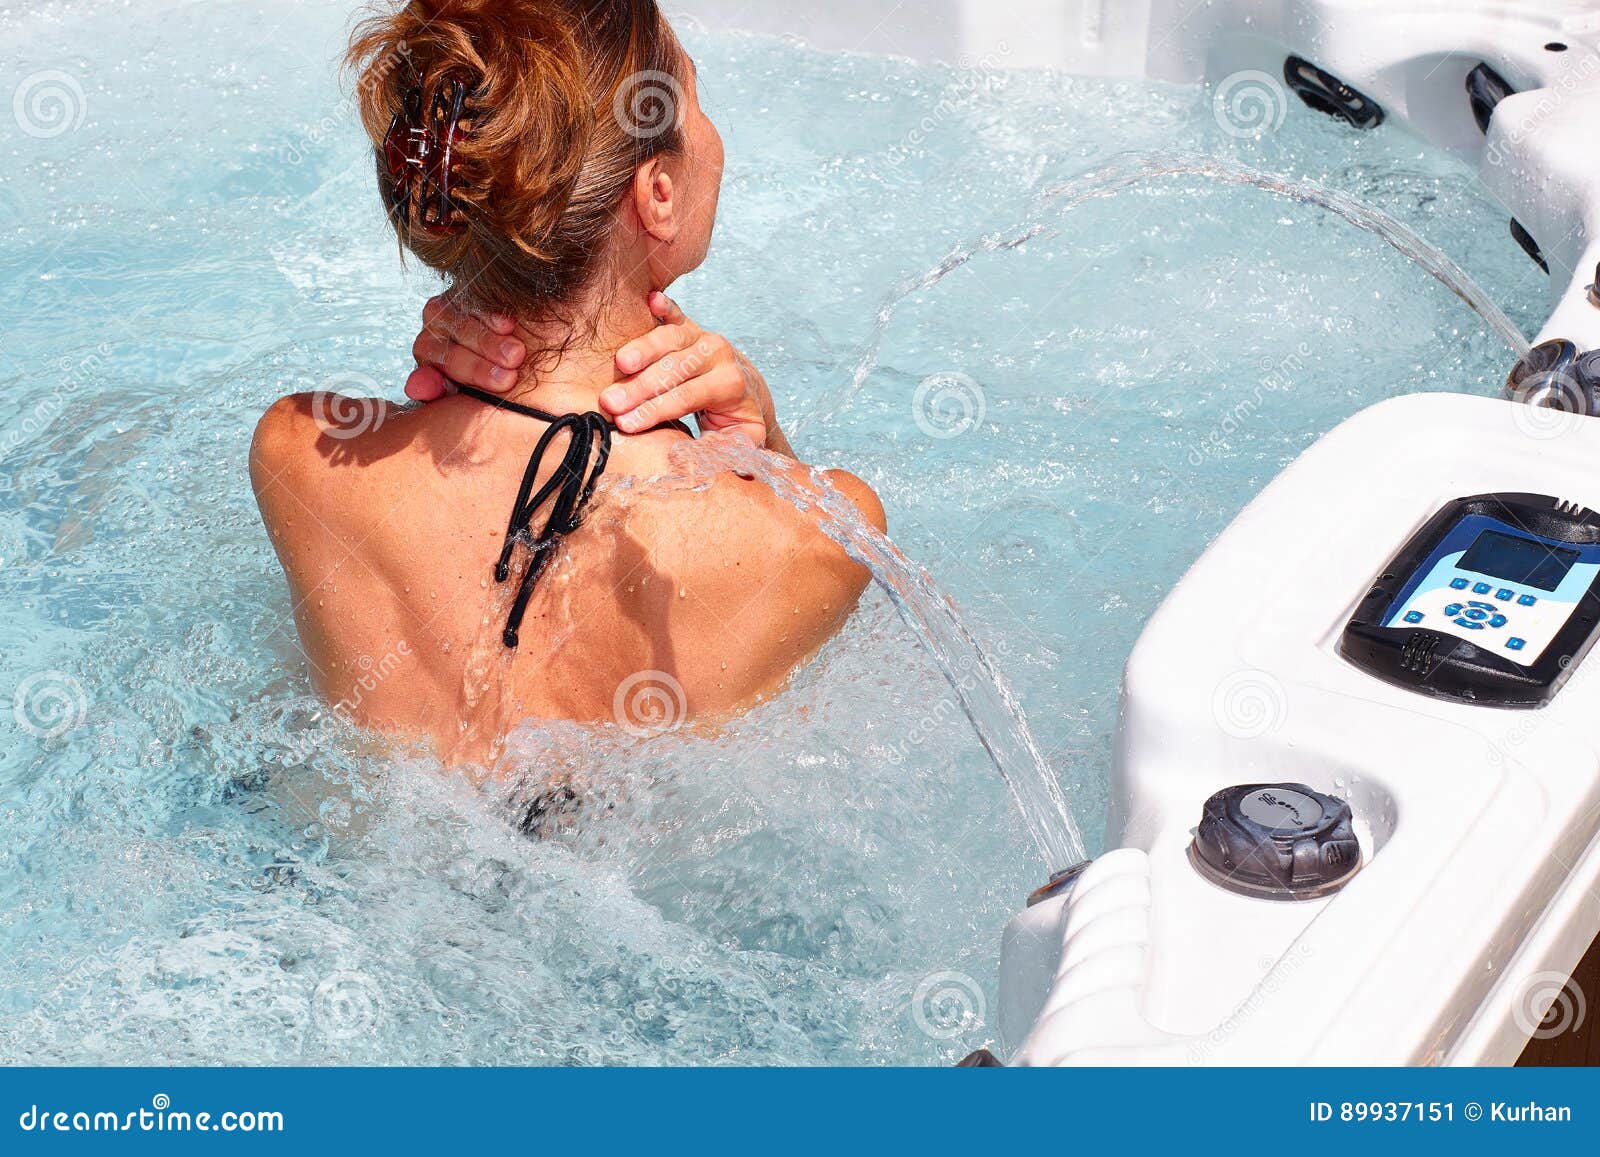 beautiful woman relaxing in hot tub.